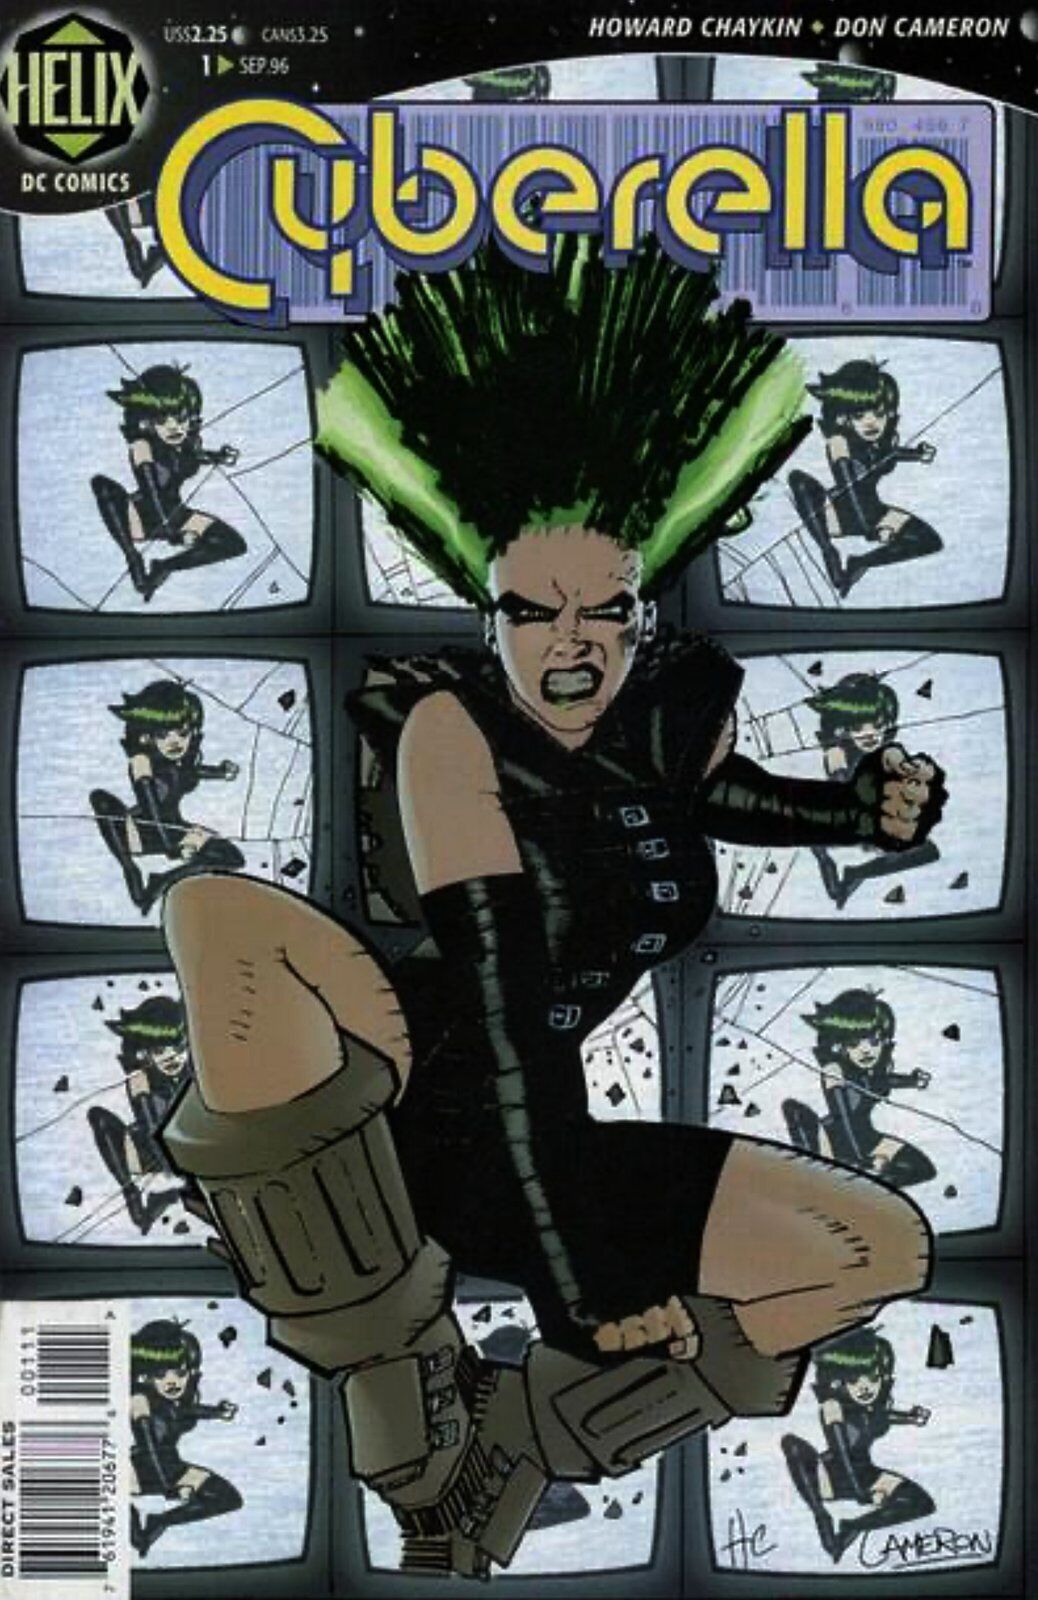 Cyberella #1 (1996-1997) DC Comics